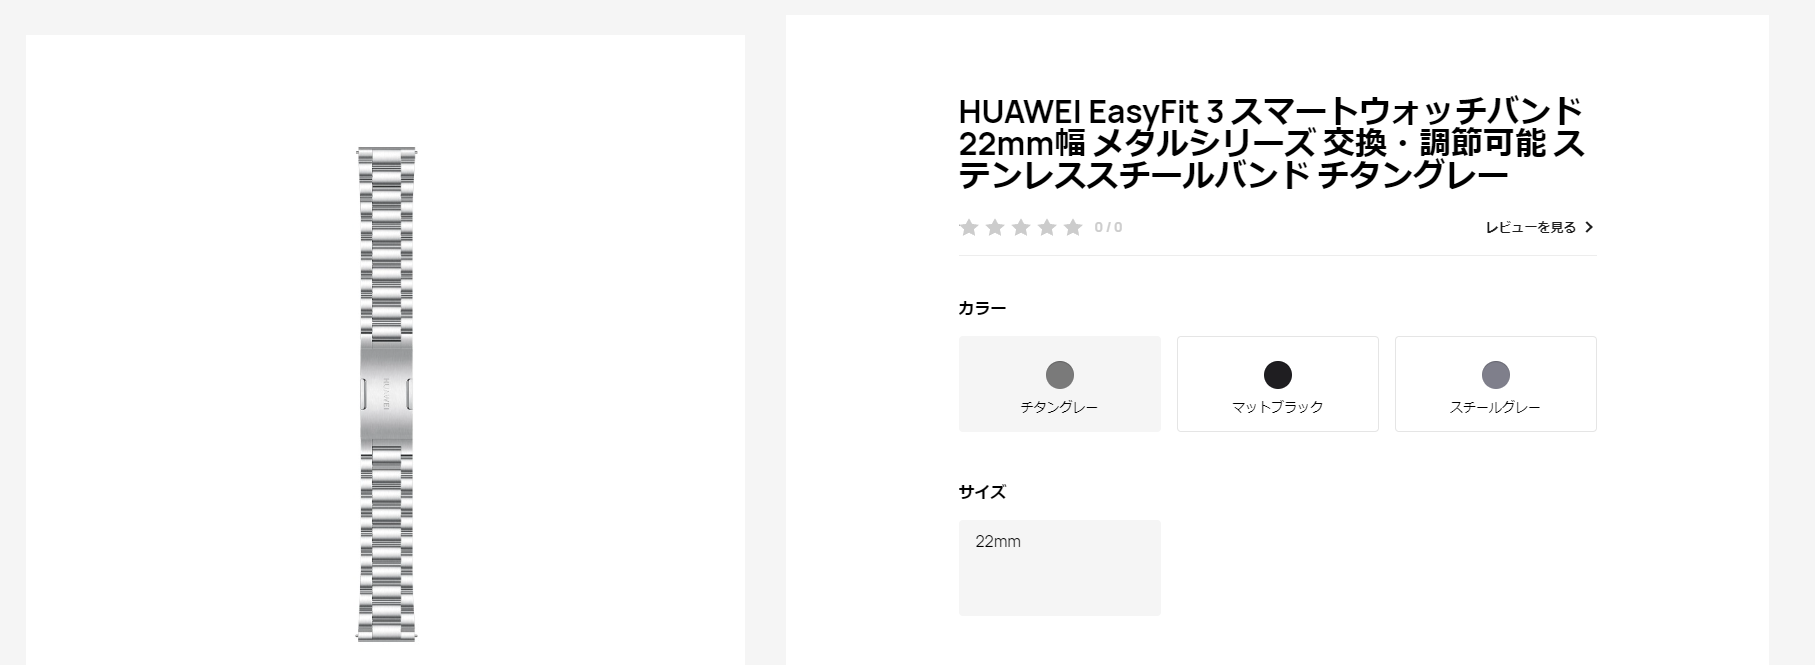 市場 HUAWEI EasyFit メタルシリーズ スマートウォッチバンド 22mm幅 交換 調節可能 ステンレススチール マットブラック日本 